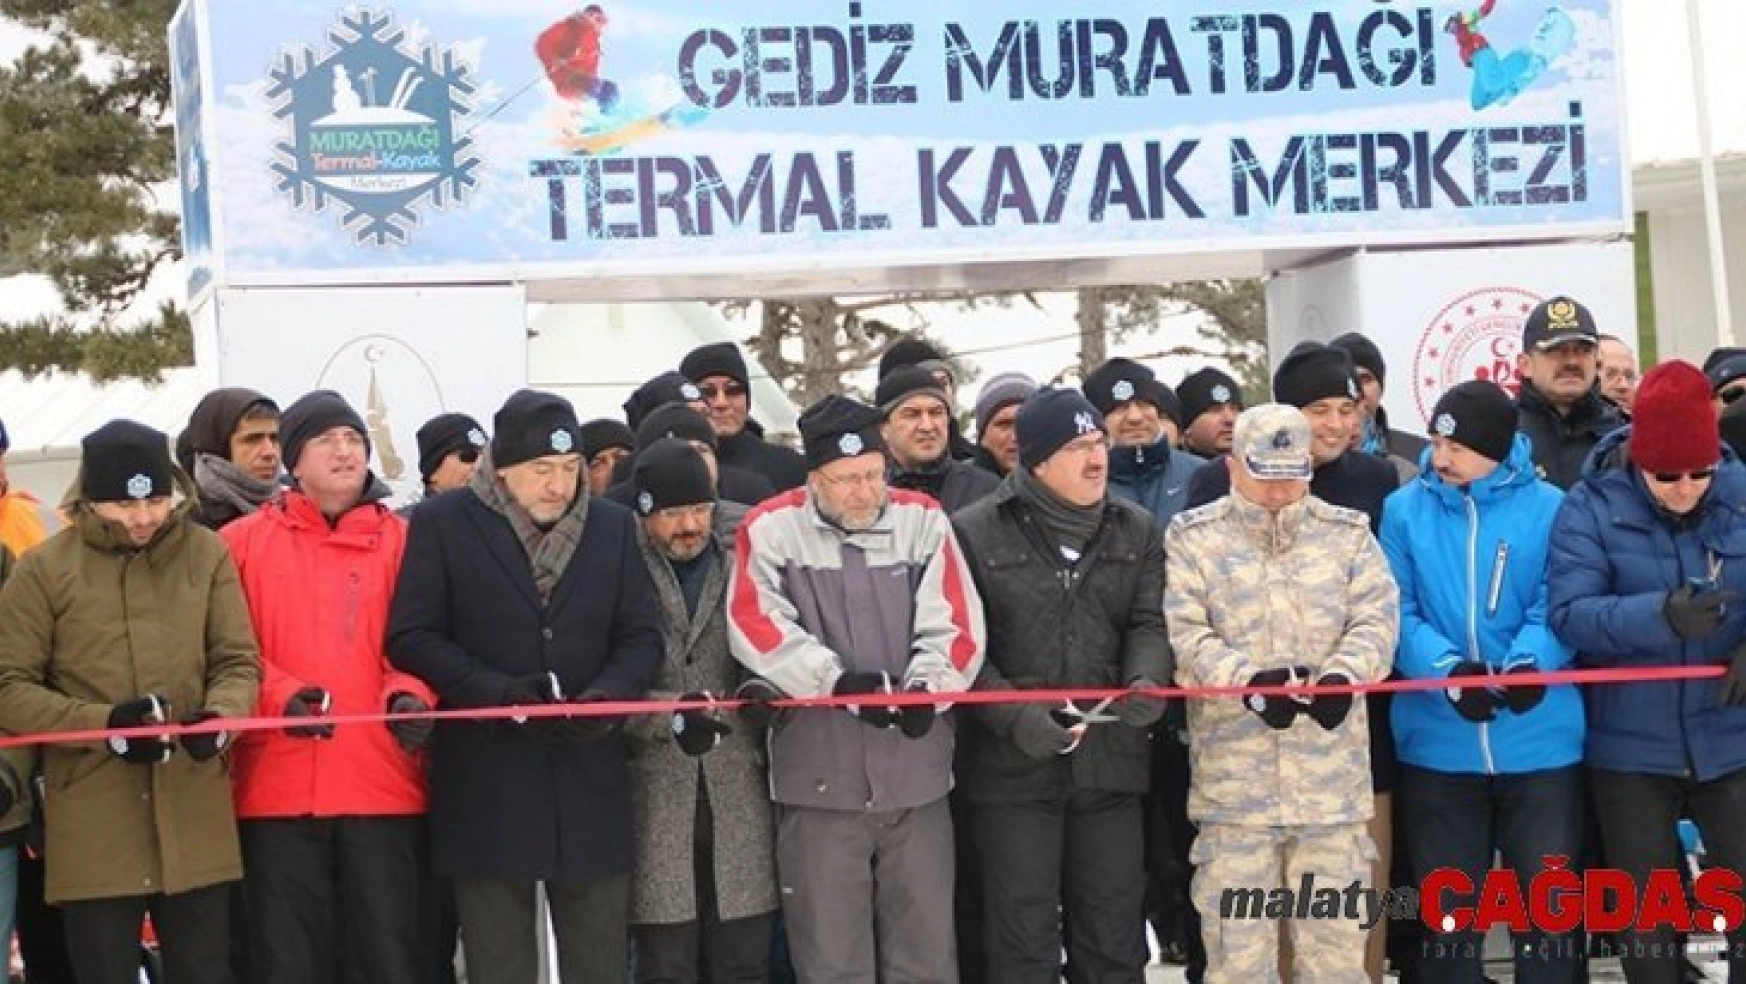 Murat Dağı'nda kayak sezonu törenle açıldı